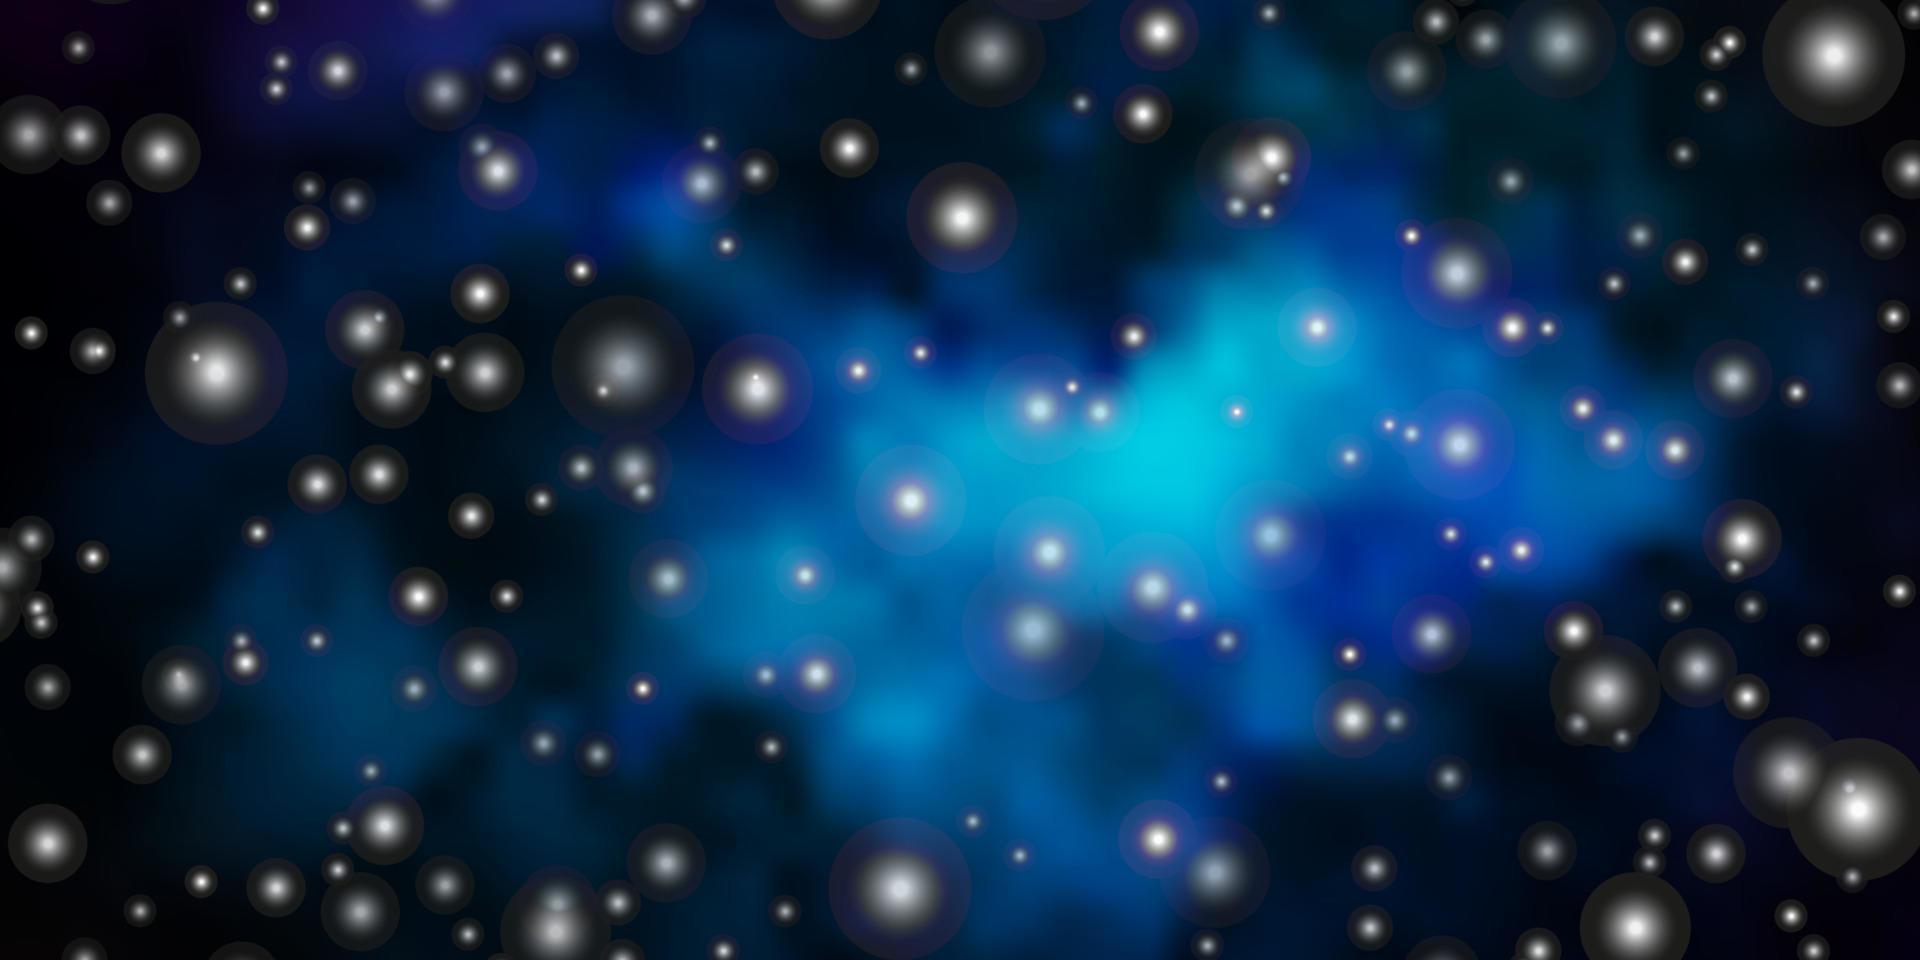 fond de vecteur bleu foncé avec de petites et grandes étoiles.